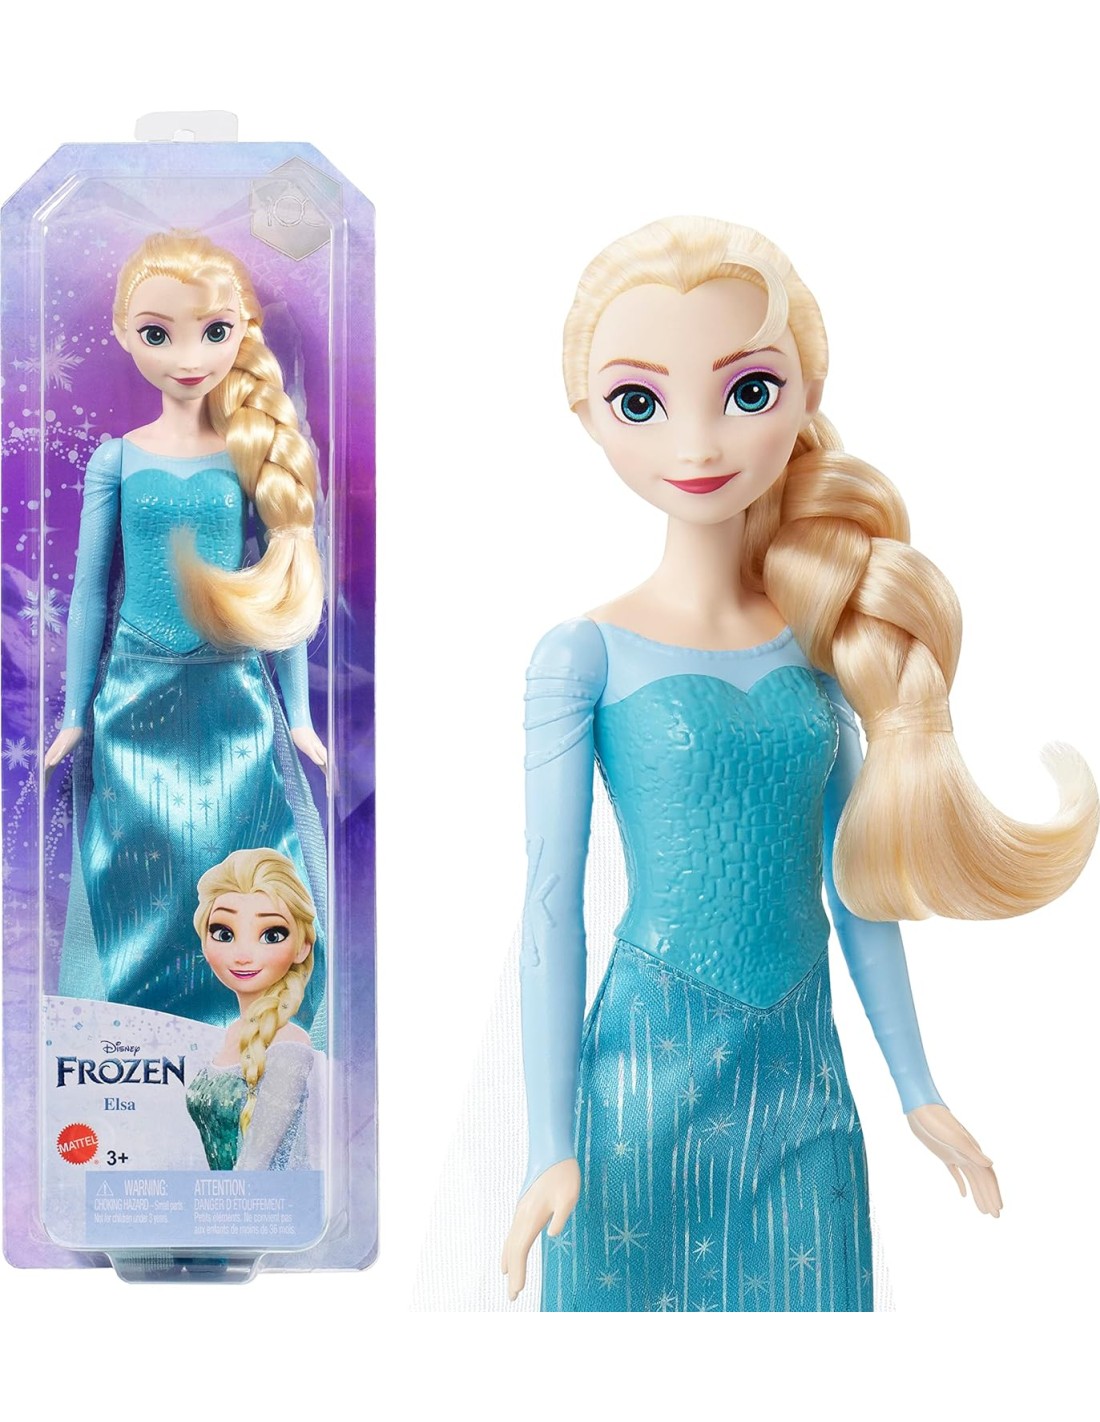 Disney Frozen Beauty Set kit accessori per capelli (per bambini)